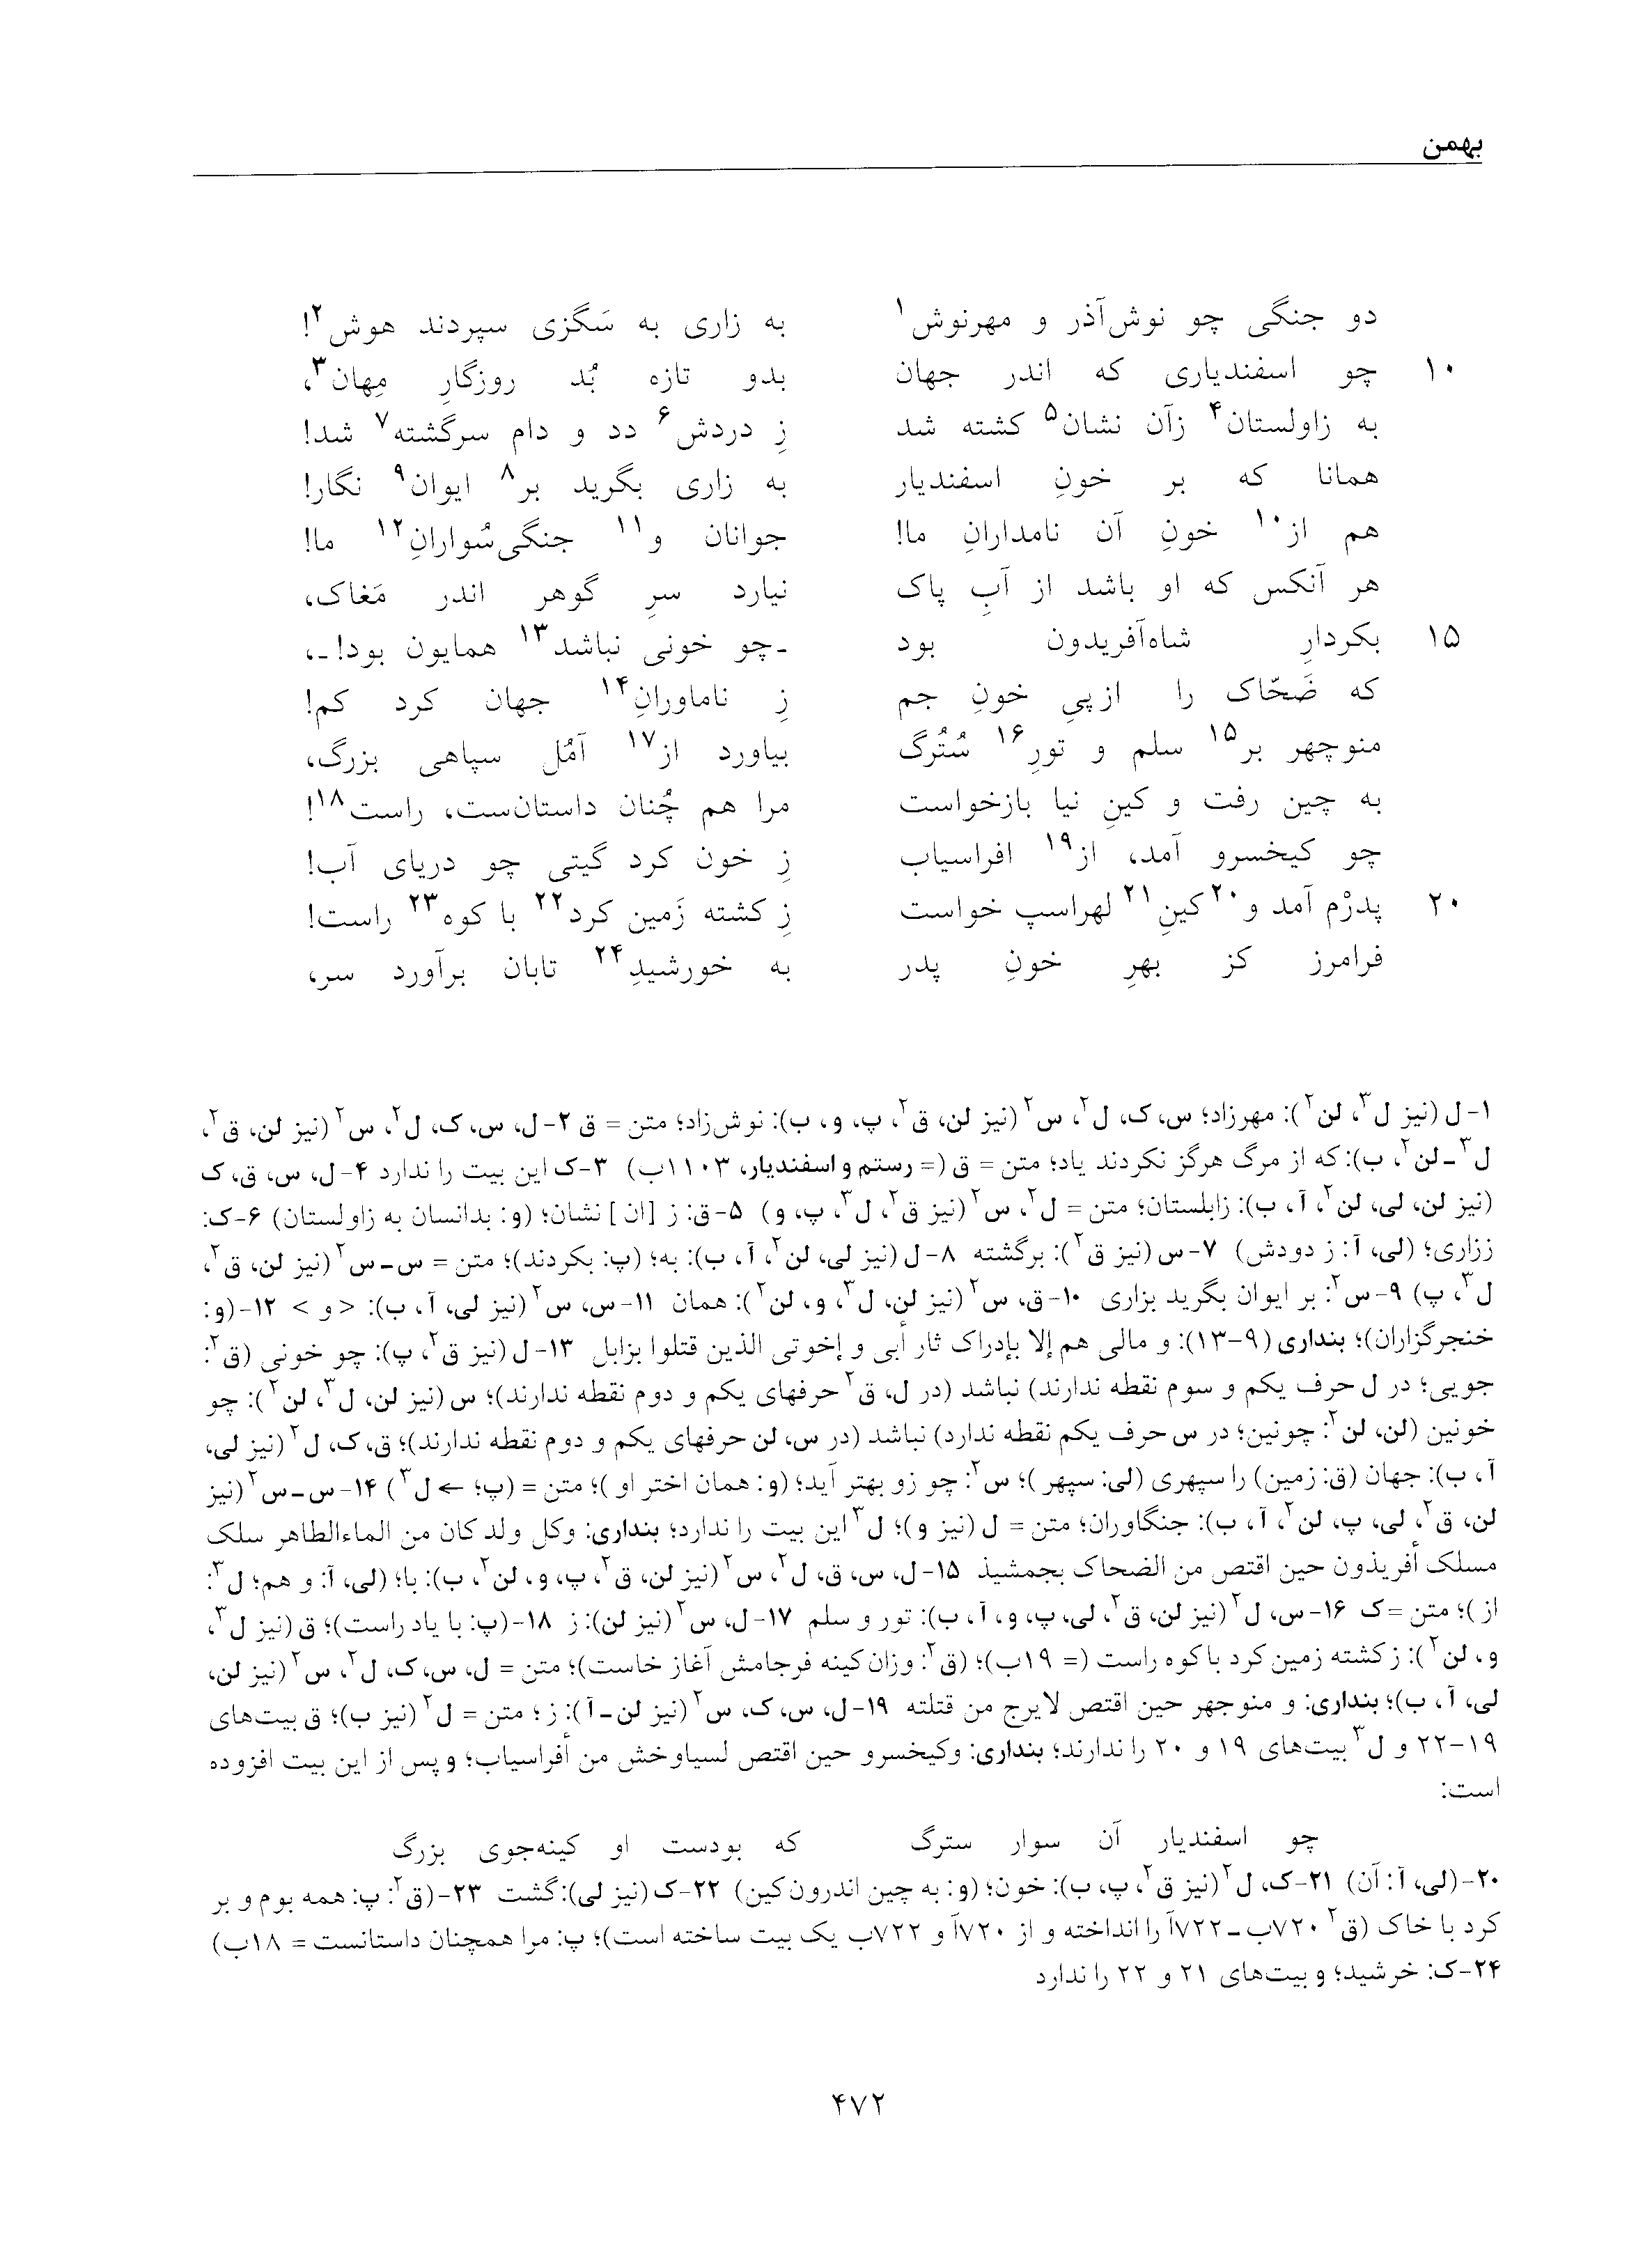 vol. 5, p. 472